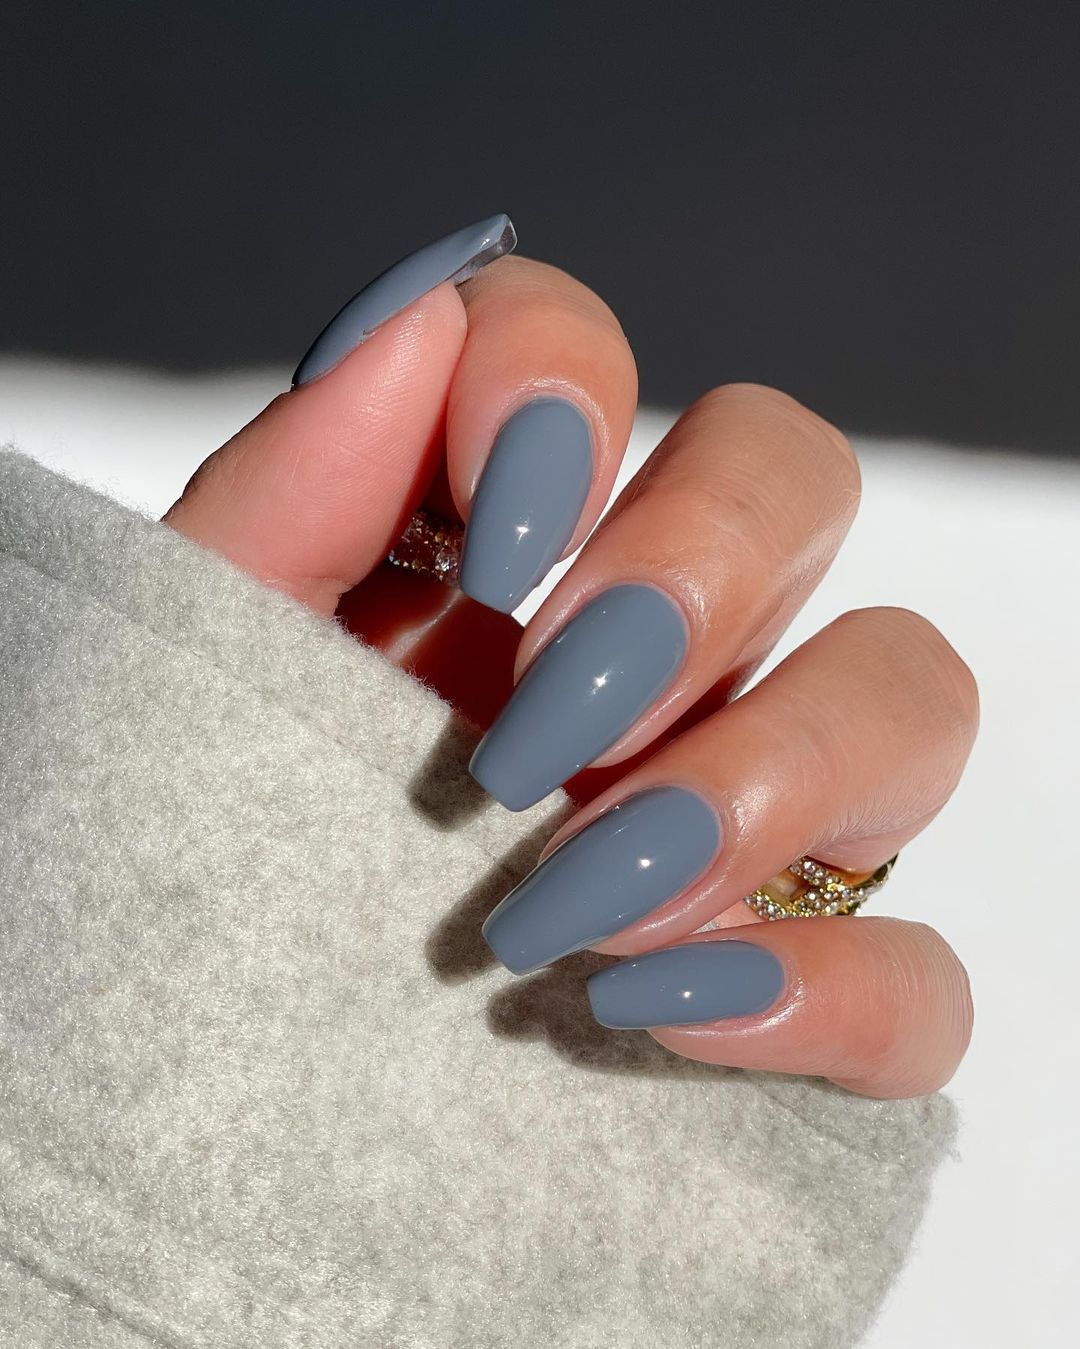 Diseños de uñas color gris - Disseynails en Instagram